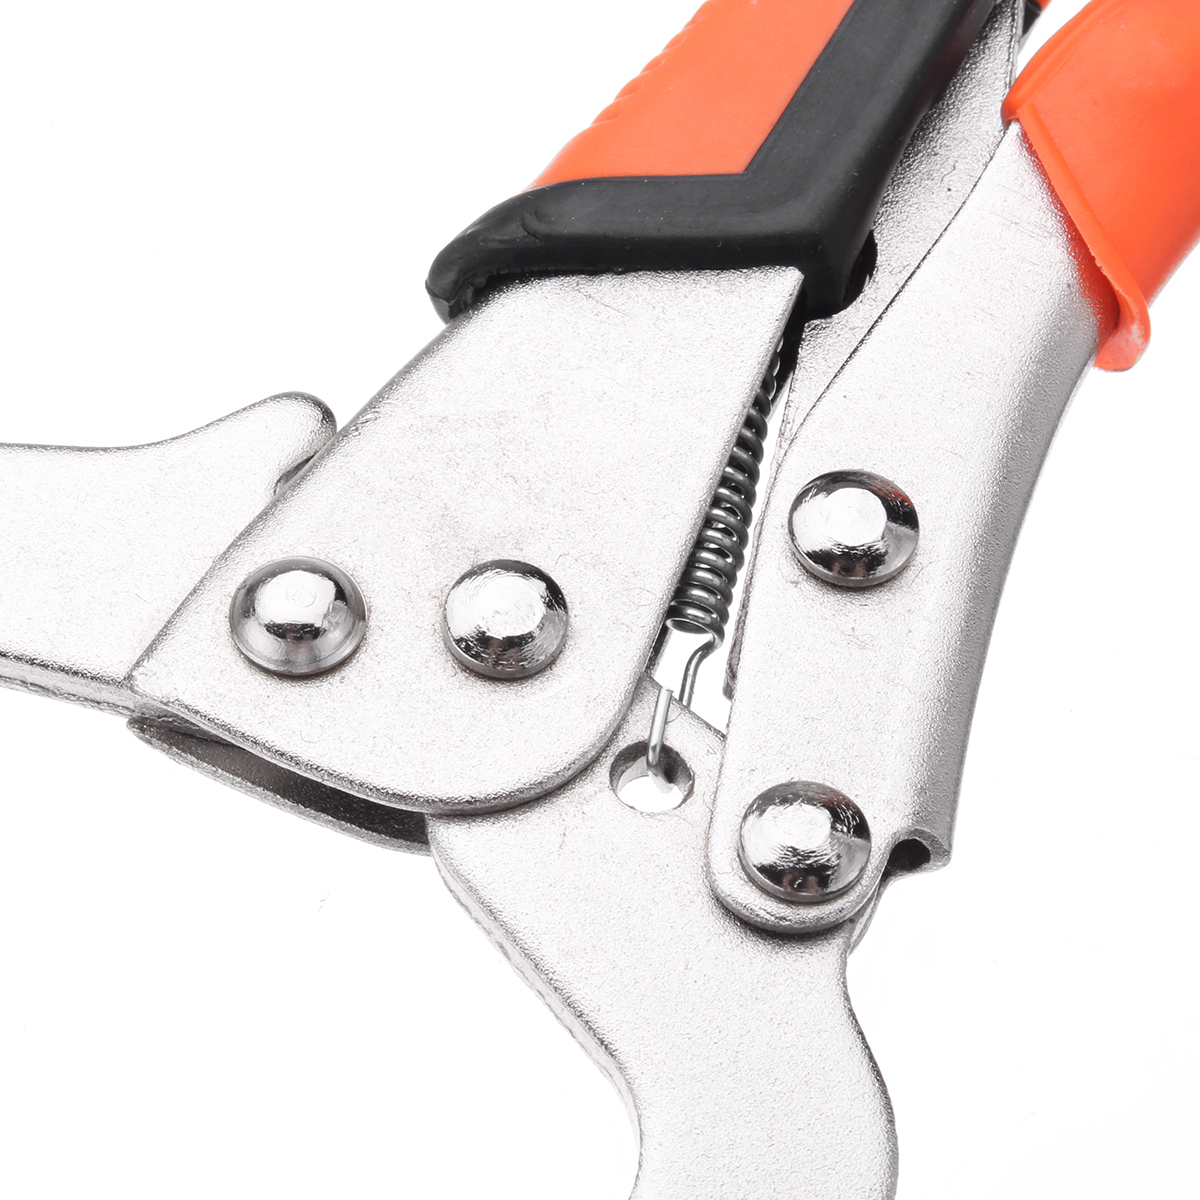 69111418inch-Alloy-Steel-C-Bracket-Vise-Grip-Welding-Quick-Pliers-Hand-Tool-1260840-10